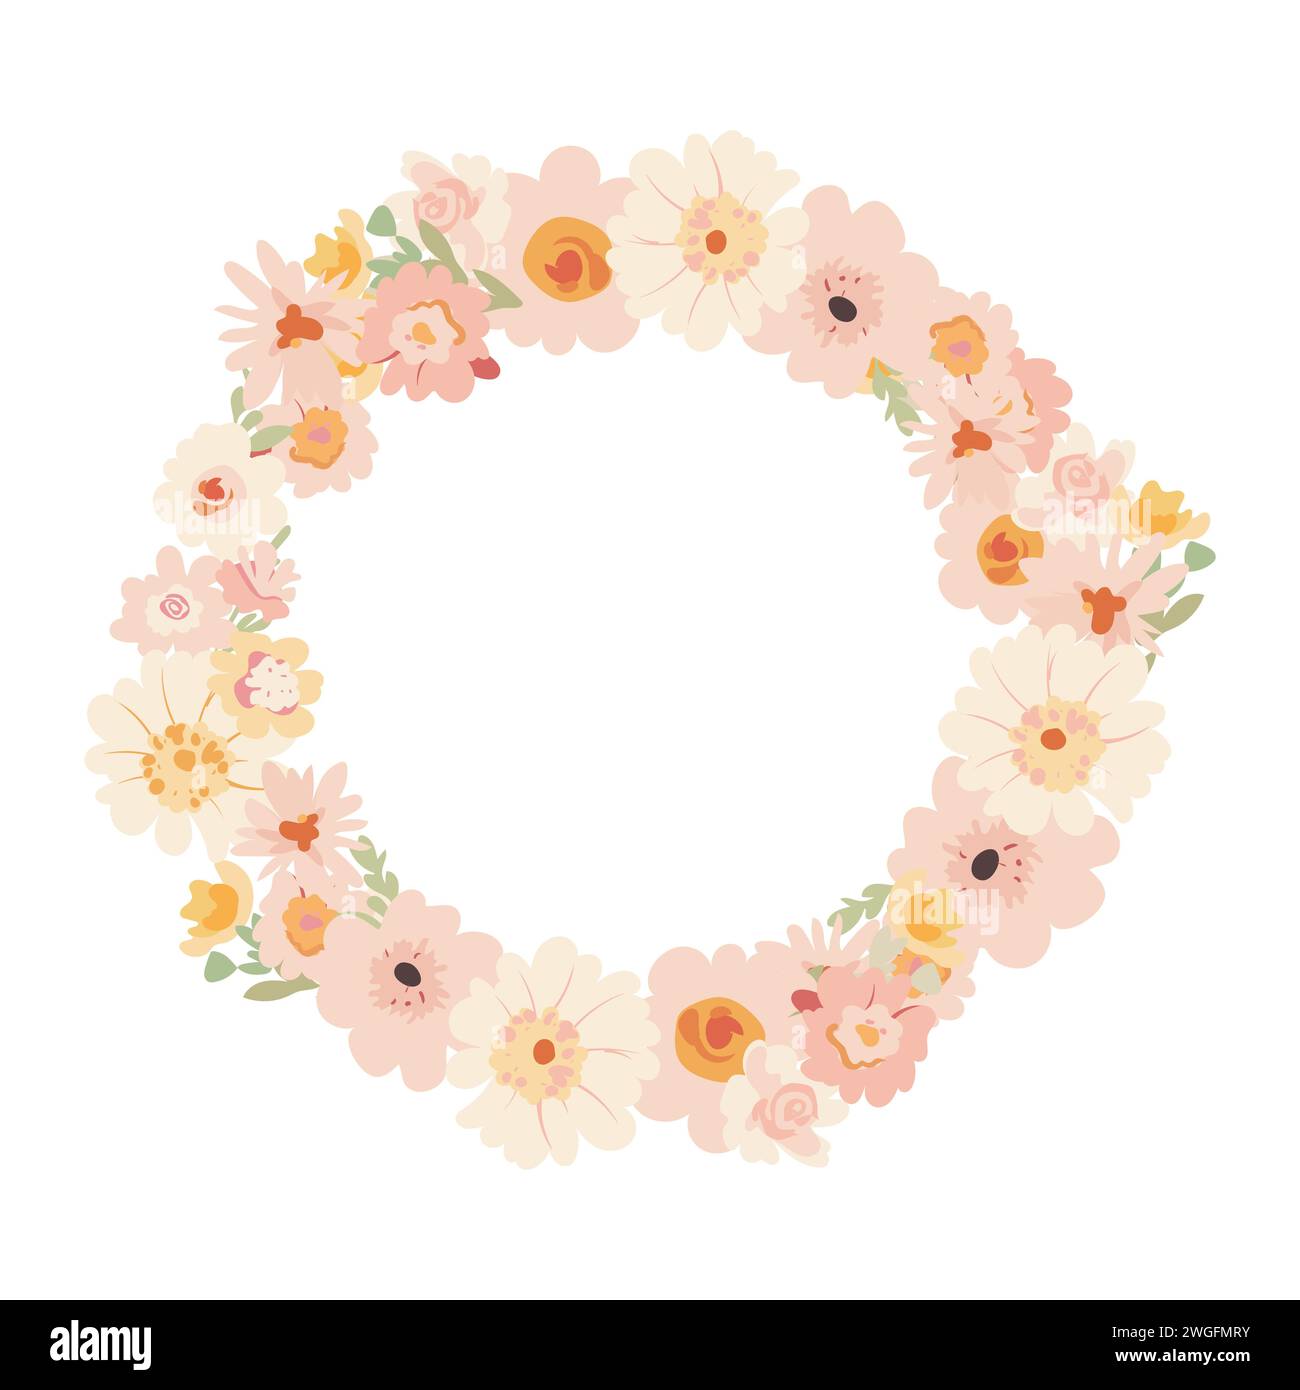 Ein schöner runder Rahmen mit zarten Blumen in rosa Tönen, Pfingstrosen, Rosen und Dahlien. Flache Illustration für Hochzeitsdesign, Einladung, Stock Vektor